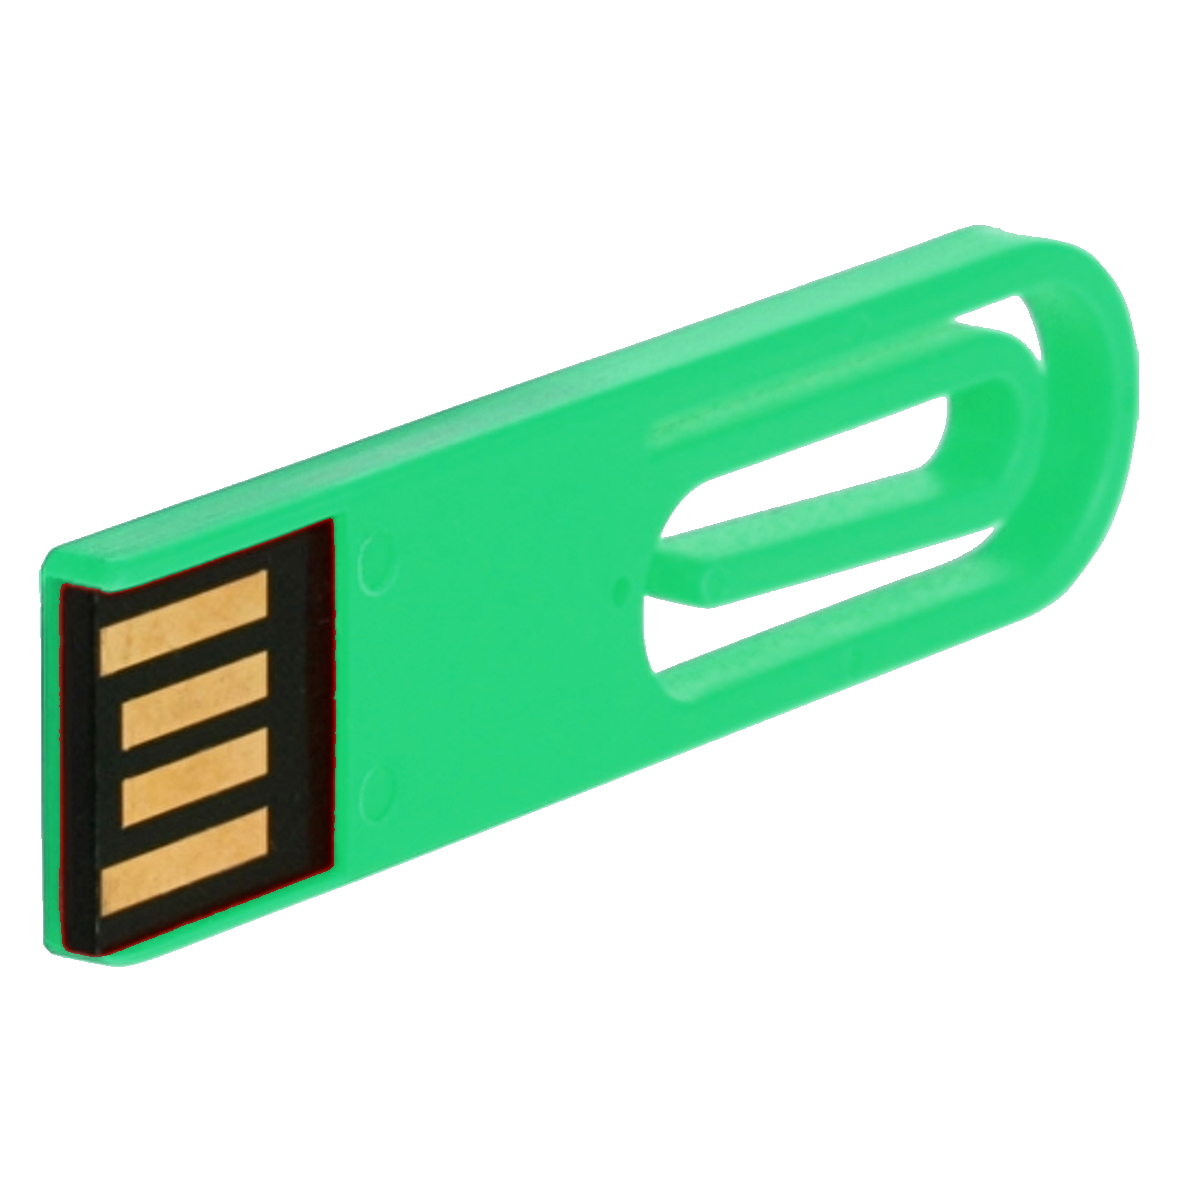 GB) GERMANY 64 USB USB-Stick (Grün, ® eCLIP